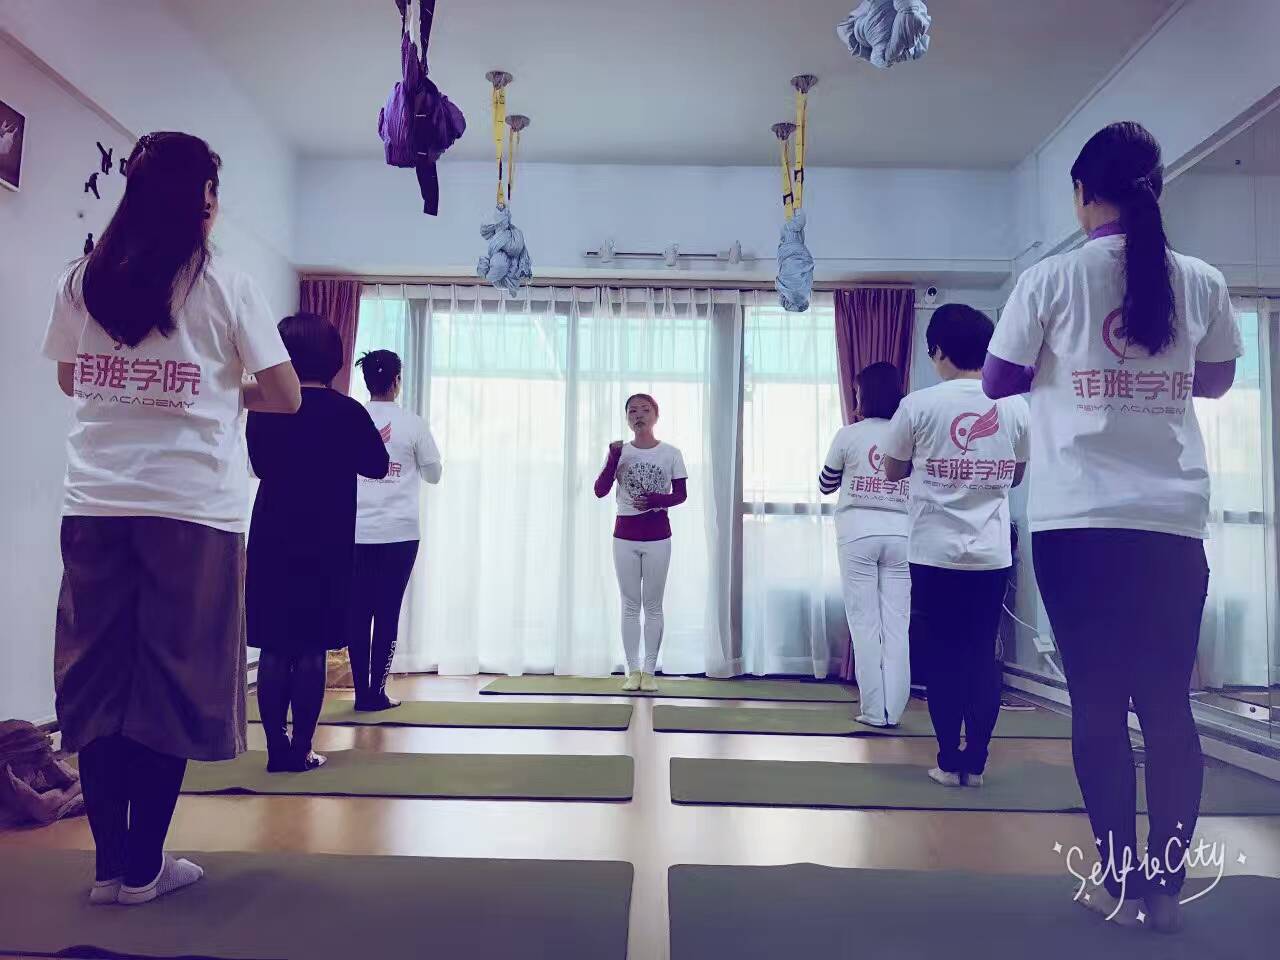 石排全能舞蹈教练培训石龙舞蹈中心东莞舞蹈专业机构图片